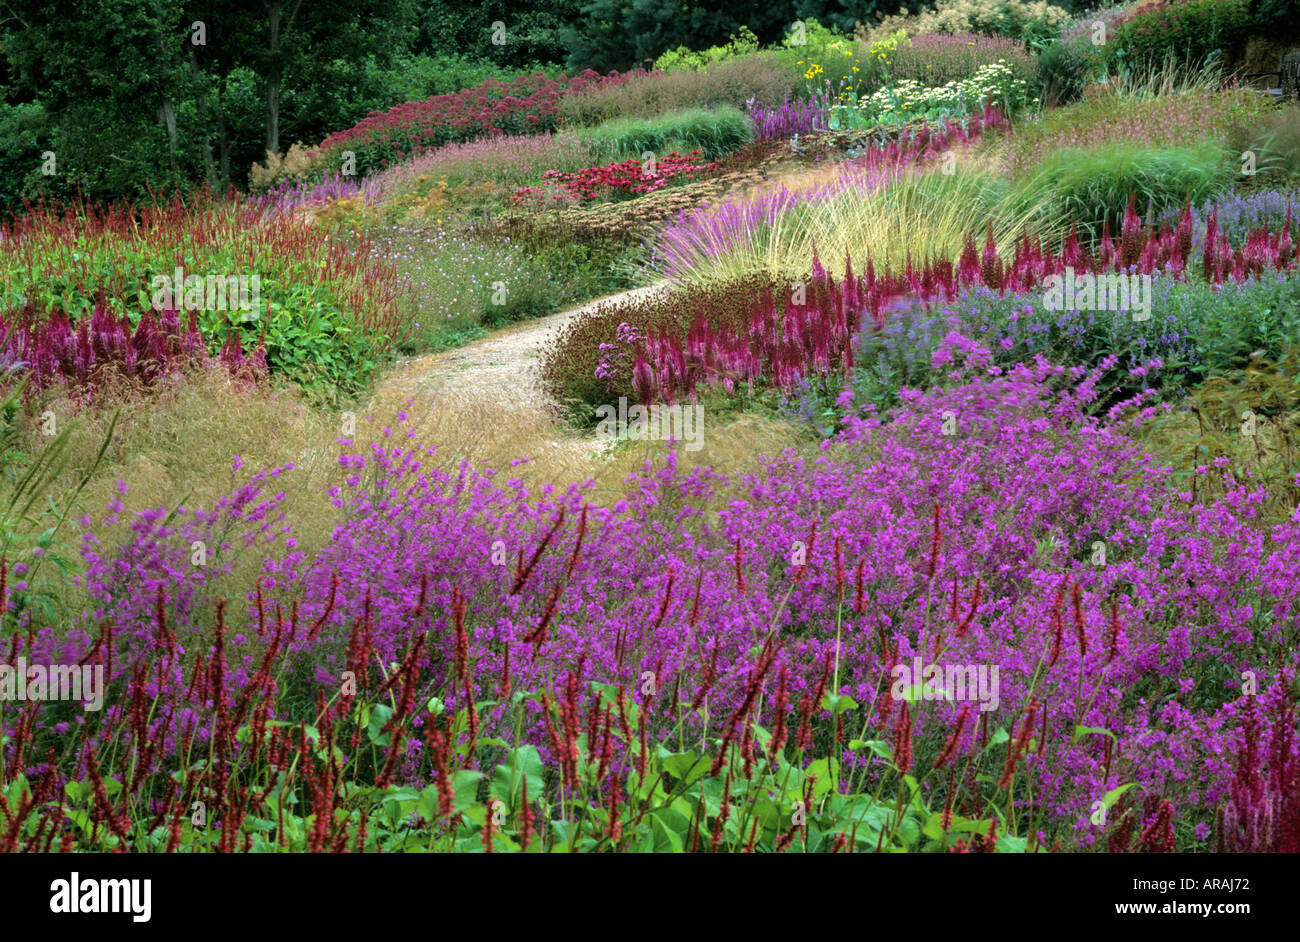 Pensthorpe Millennium Garden, Norfolk, Lythrum, persicaria, astilbe, grasses, Piet Oudolf design, pink, purple, red flowers Stock Photo